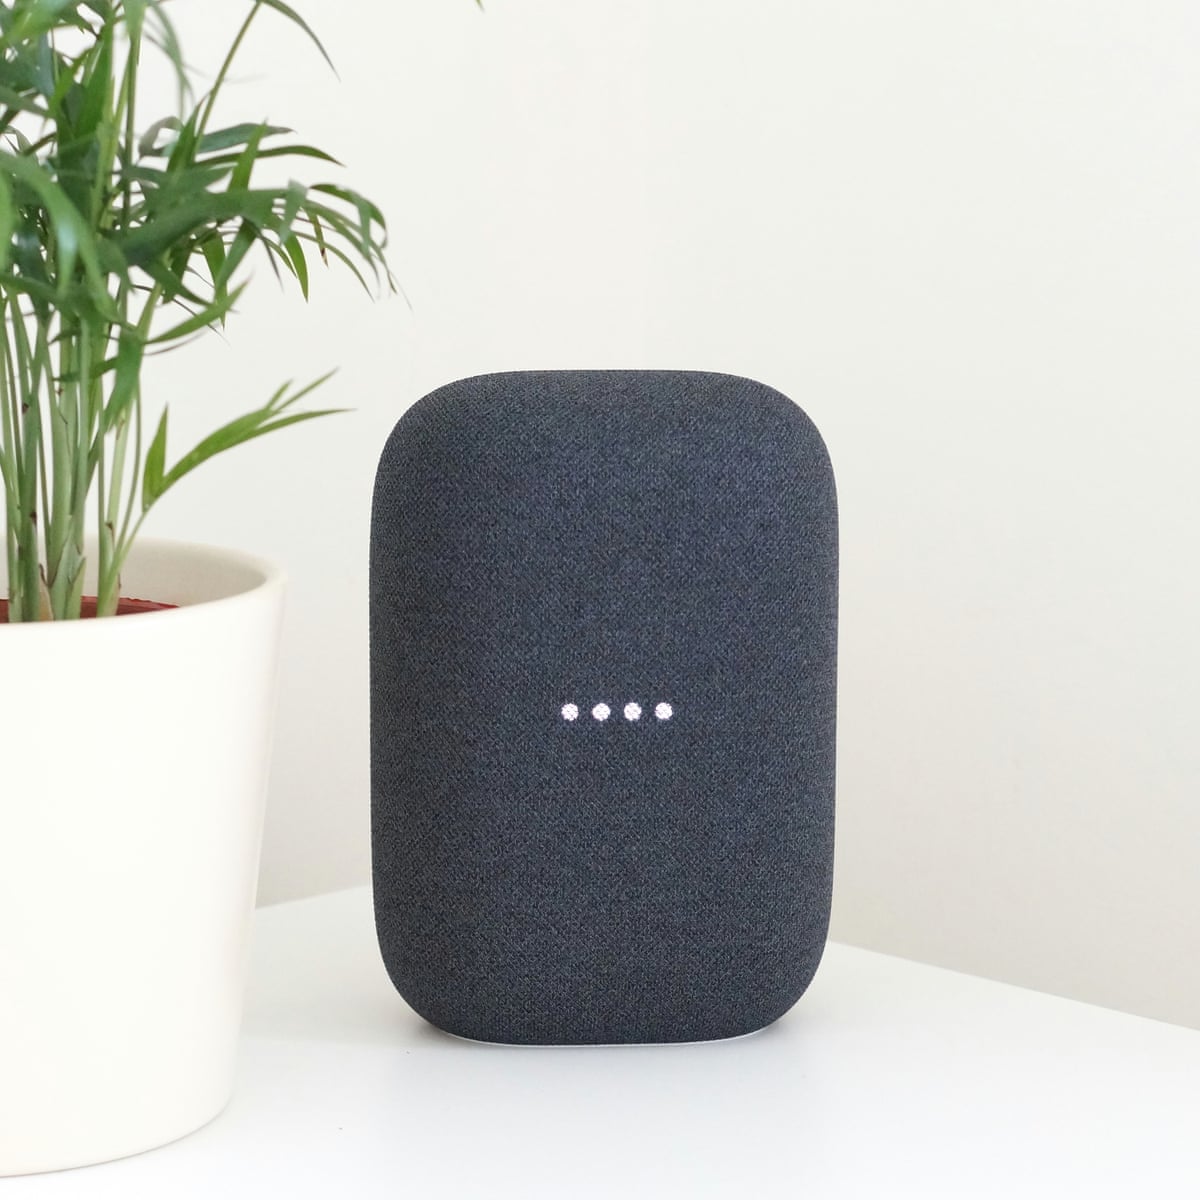 Умная колонка Черная + умный дом - Google Nest Audio Smart Speaker Charcoal